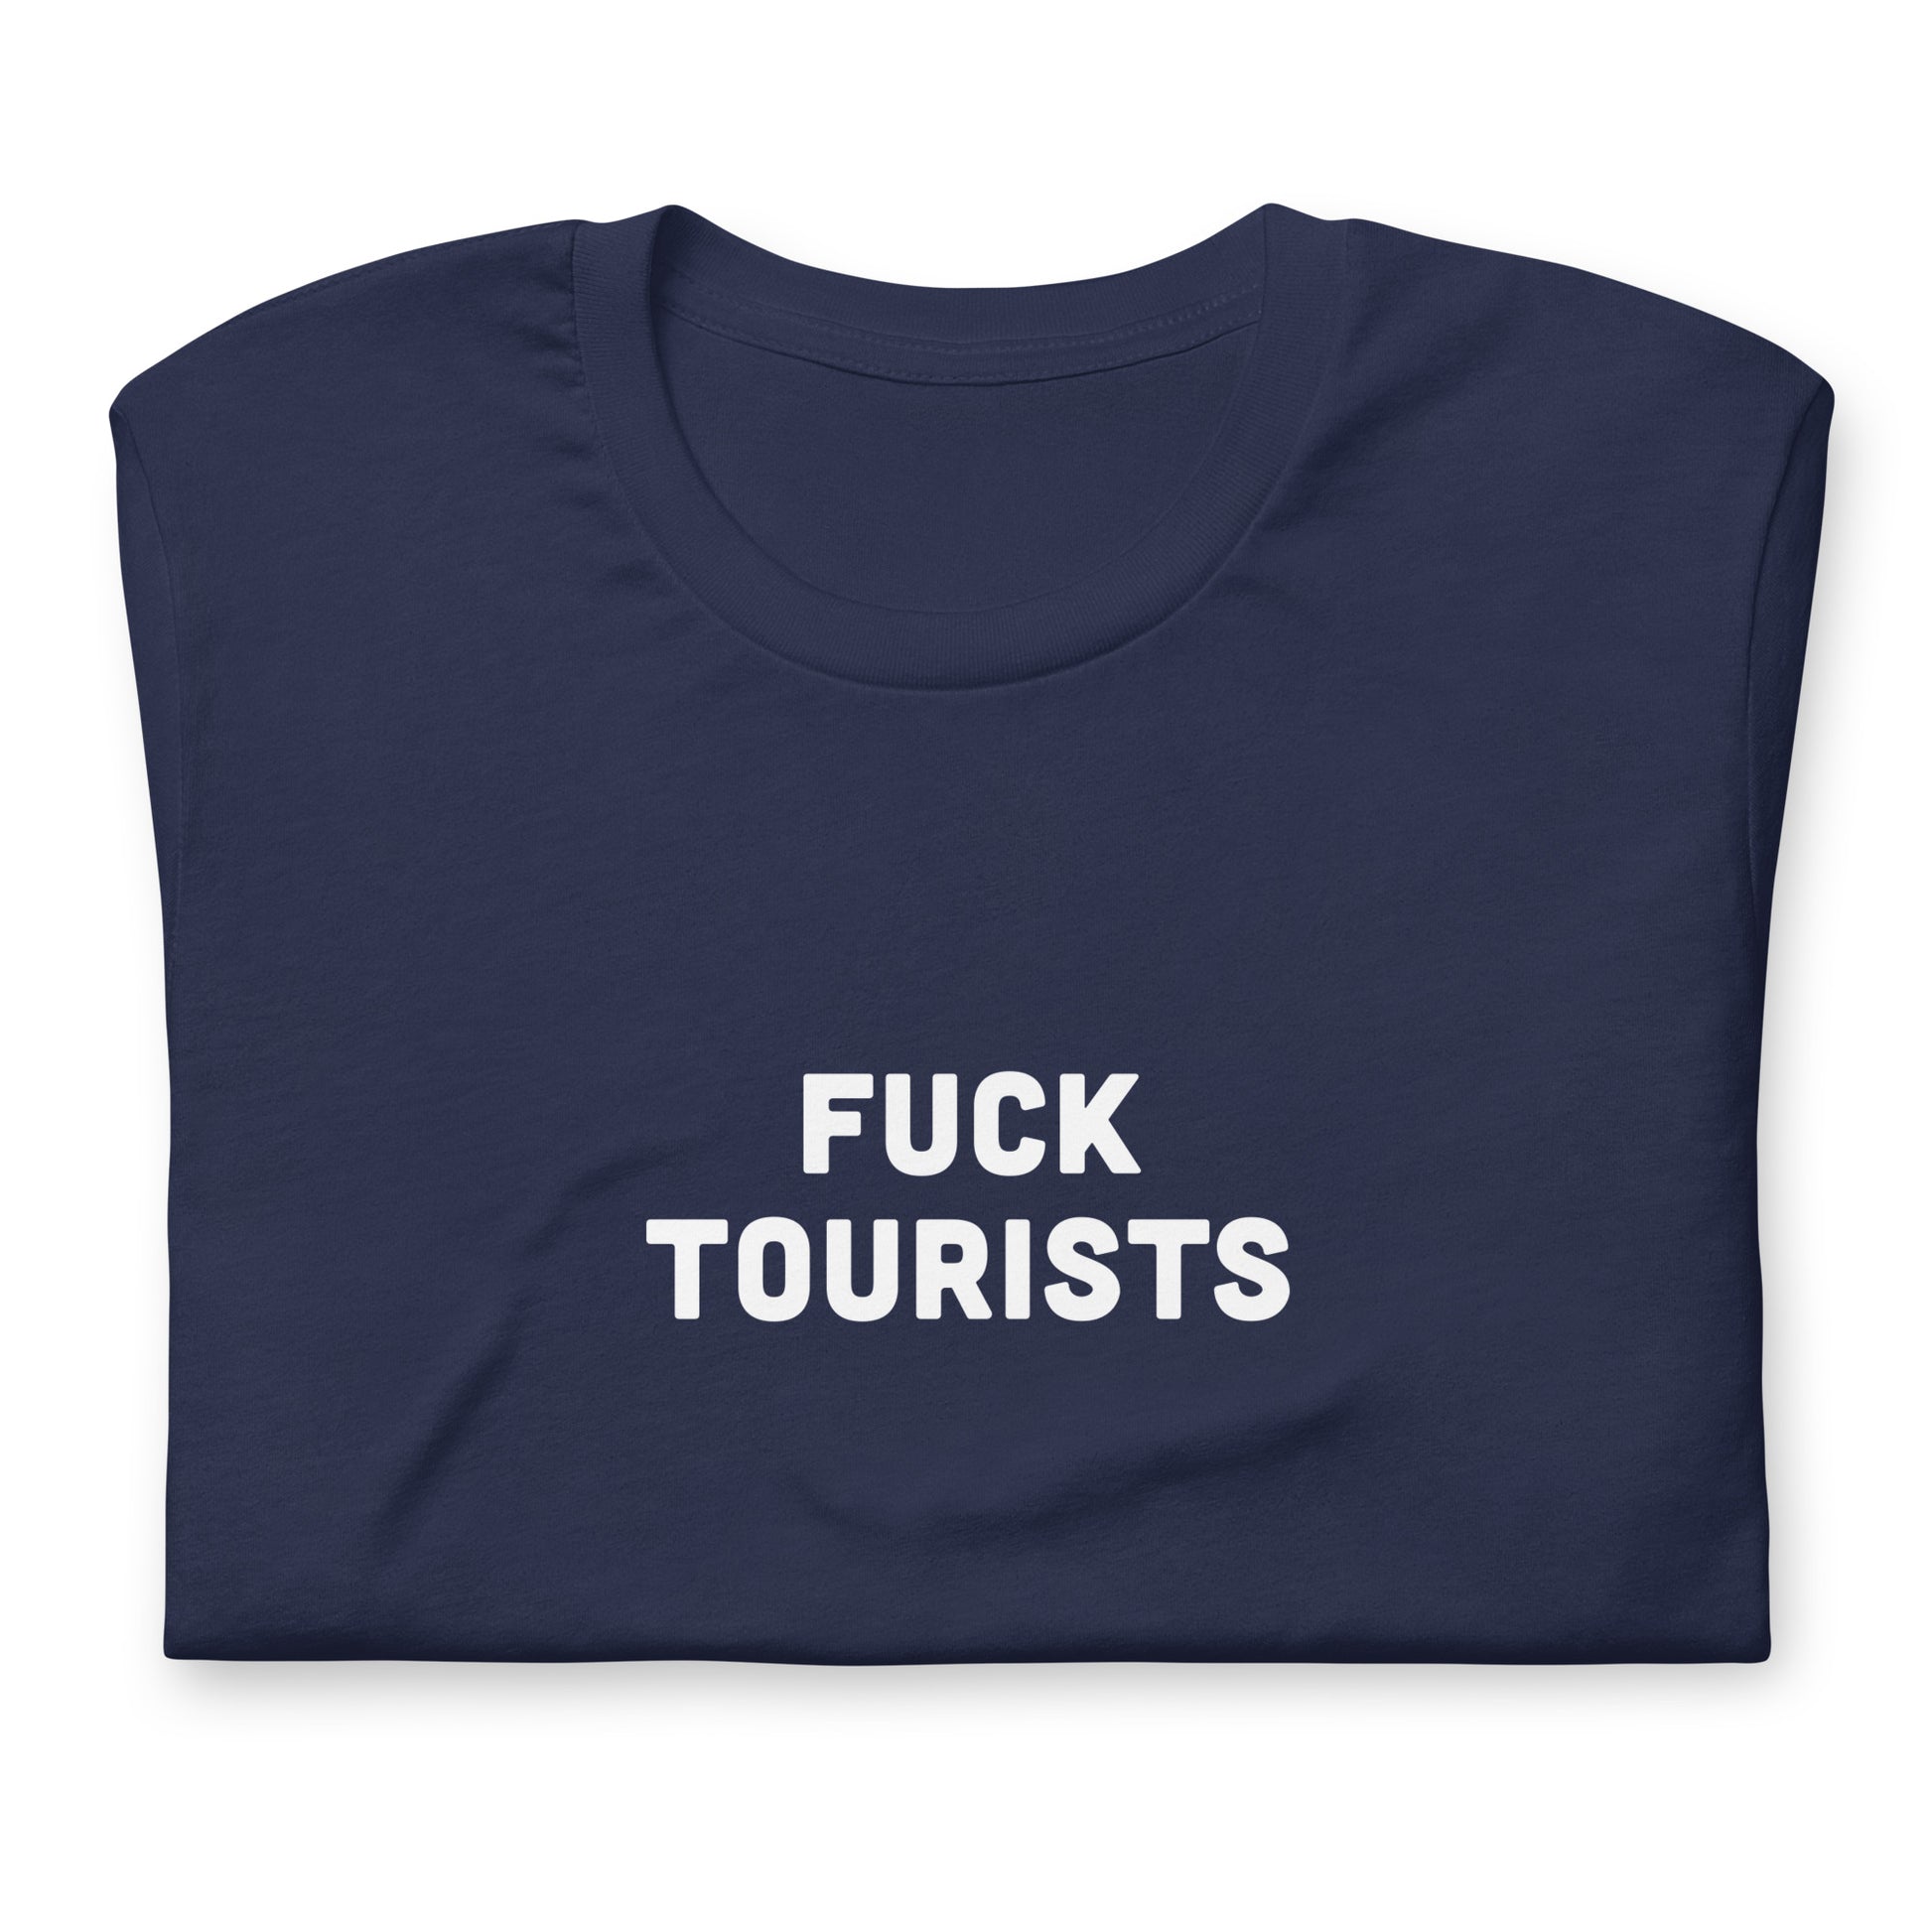 Fuck Tourists T-Shirt Size 2XL Color Black